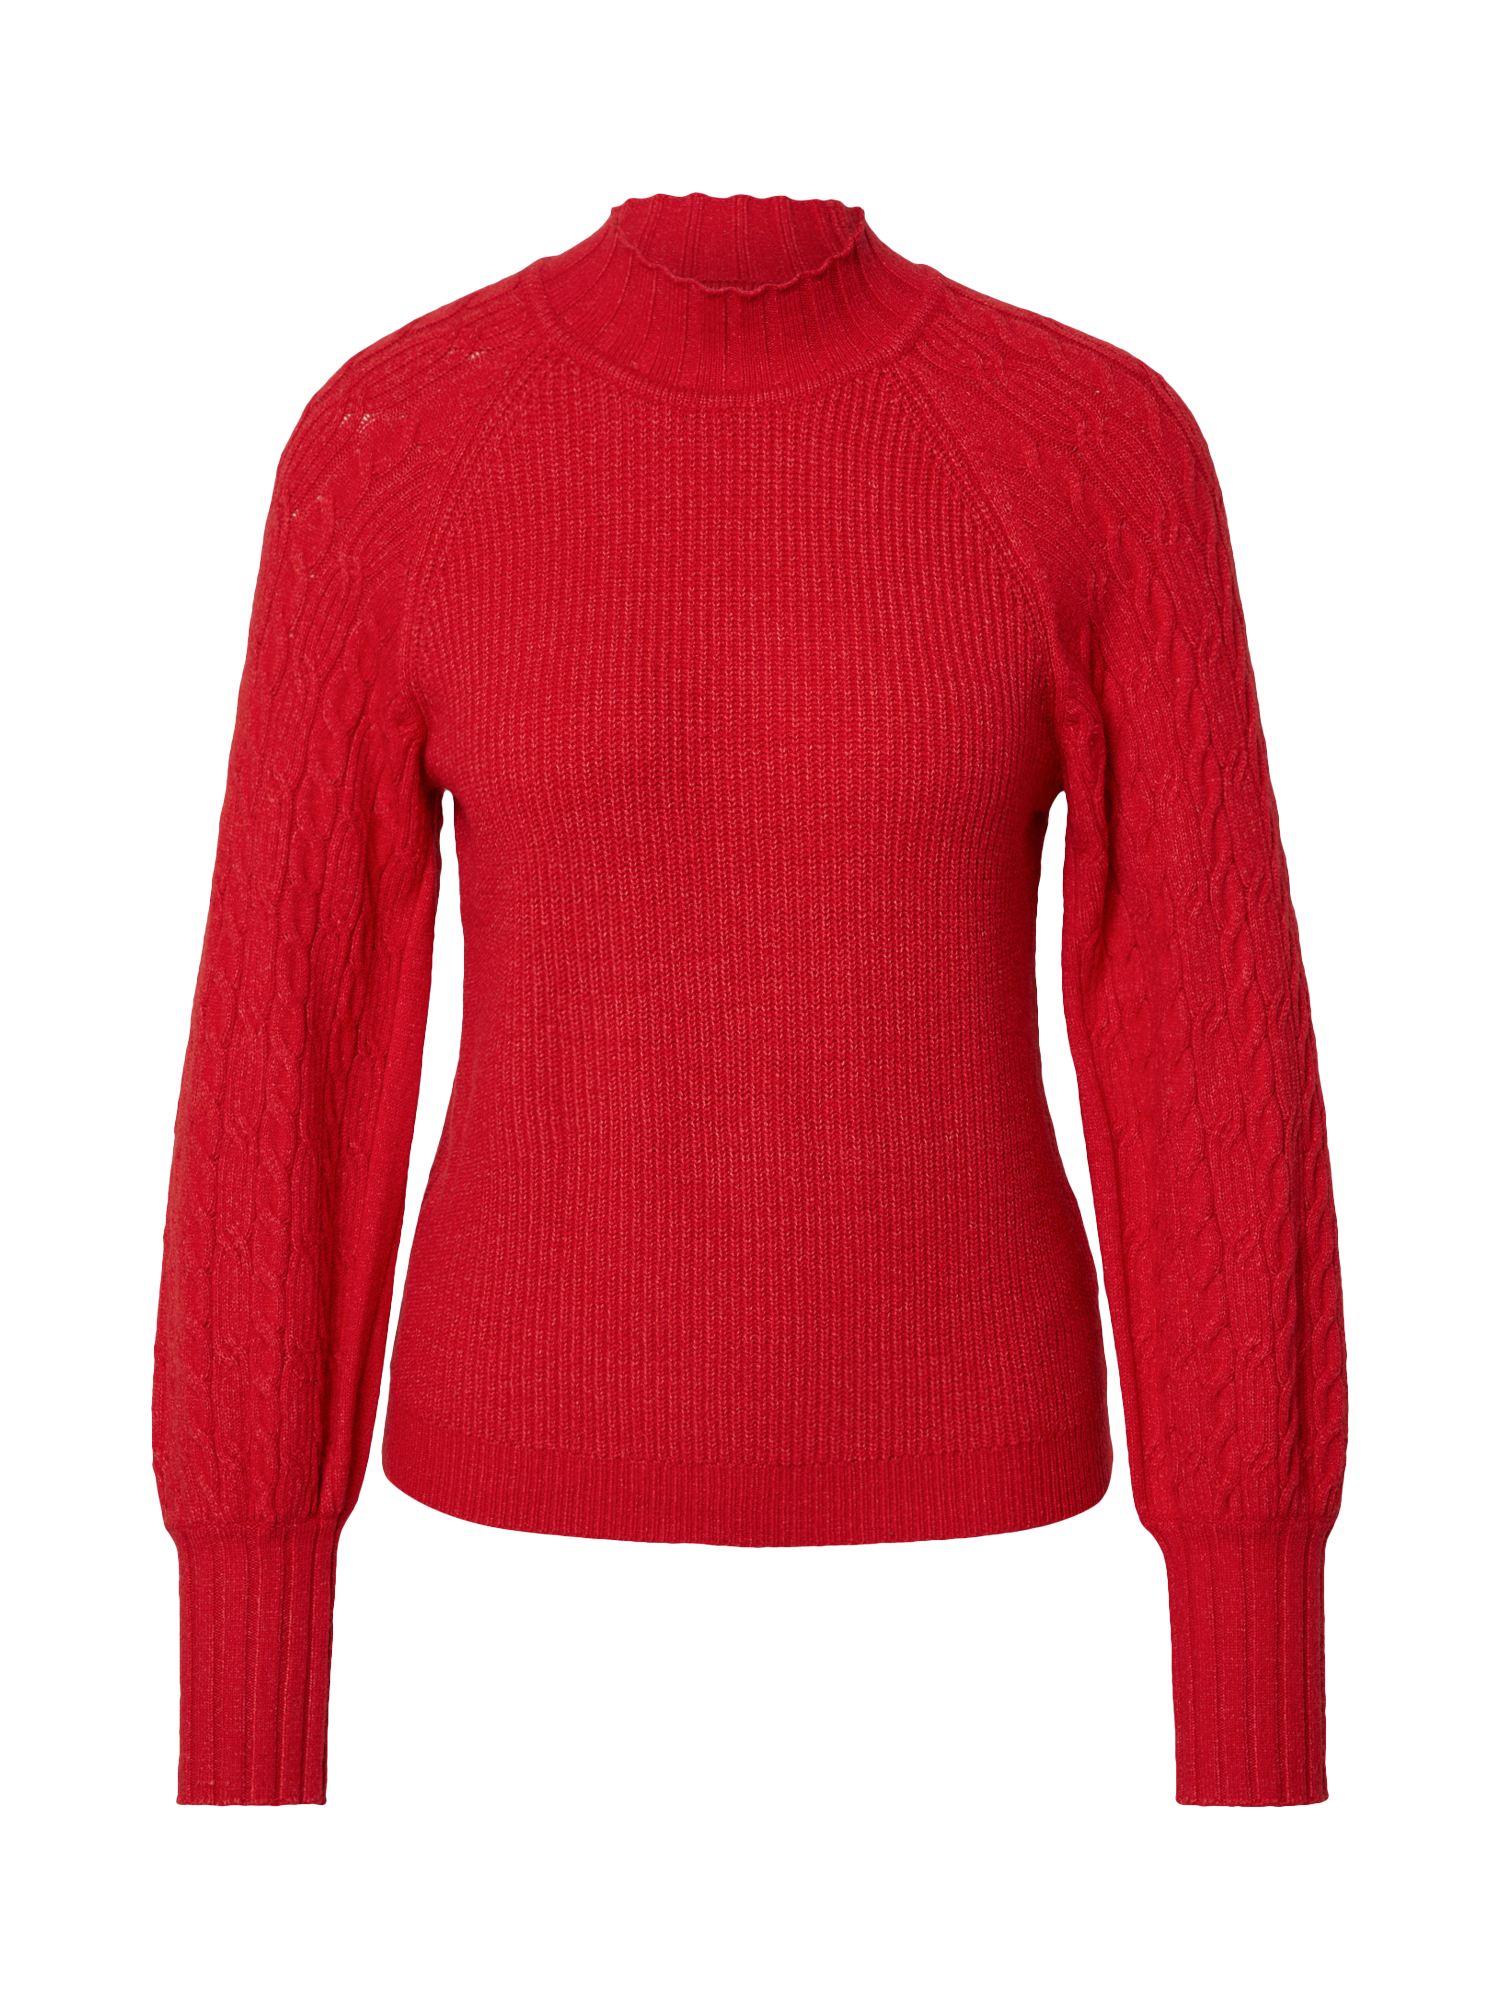 q16DC Swetry & dzianina OBJECT Sweter w kolorze Czerwonym 